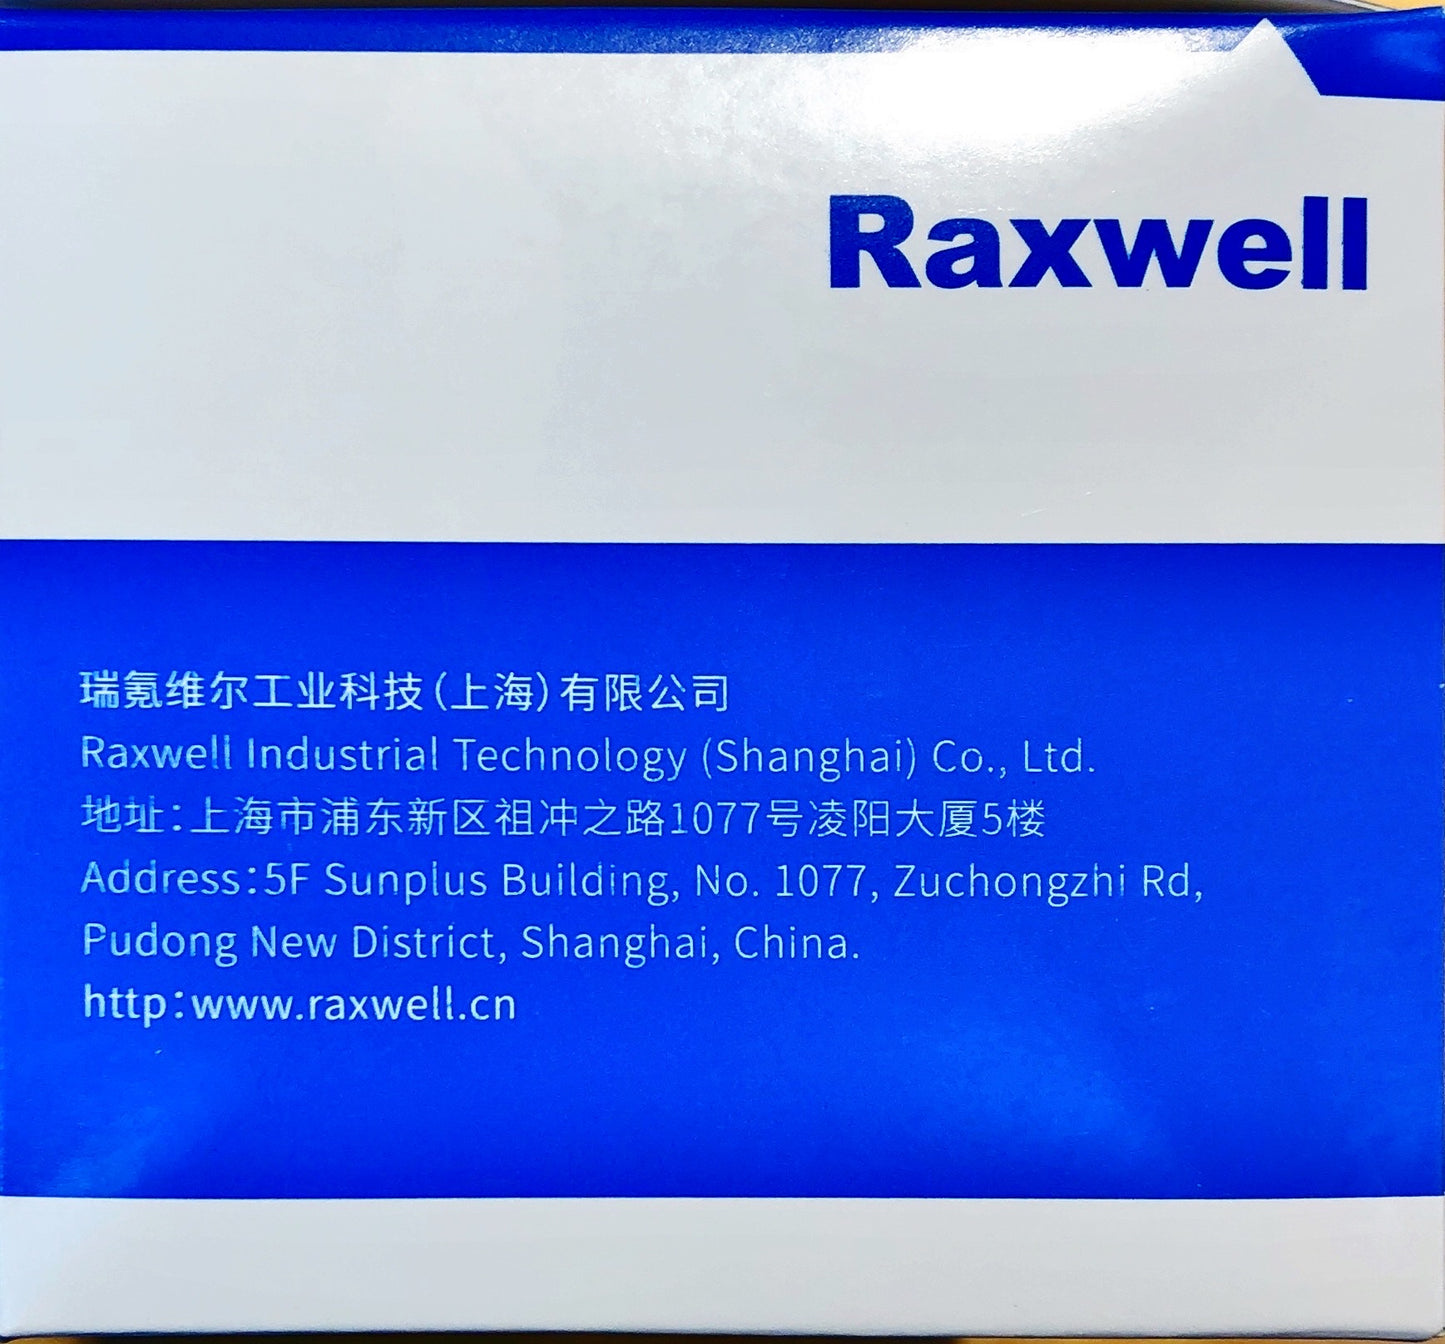 Raxwell High Quality Medical Mask (50 Pcs)